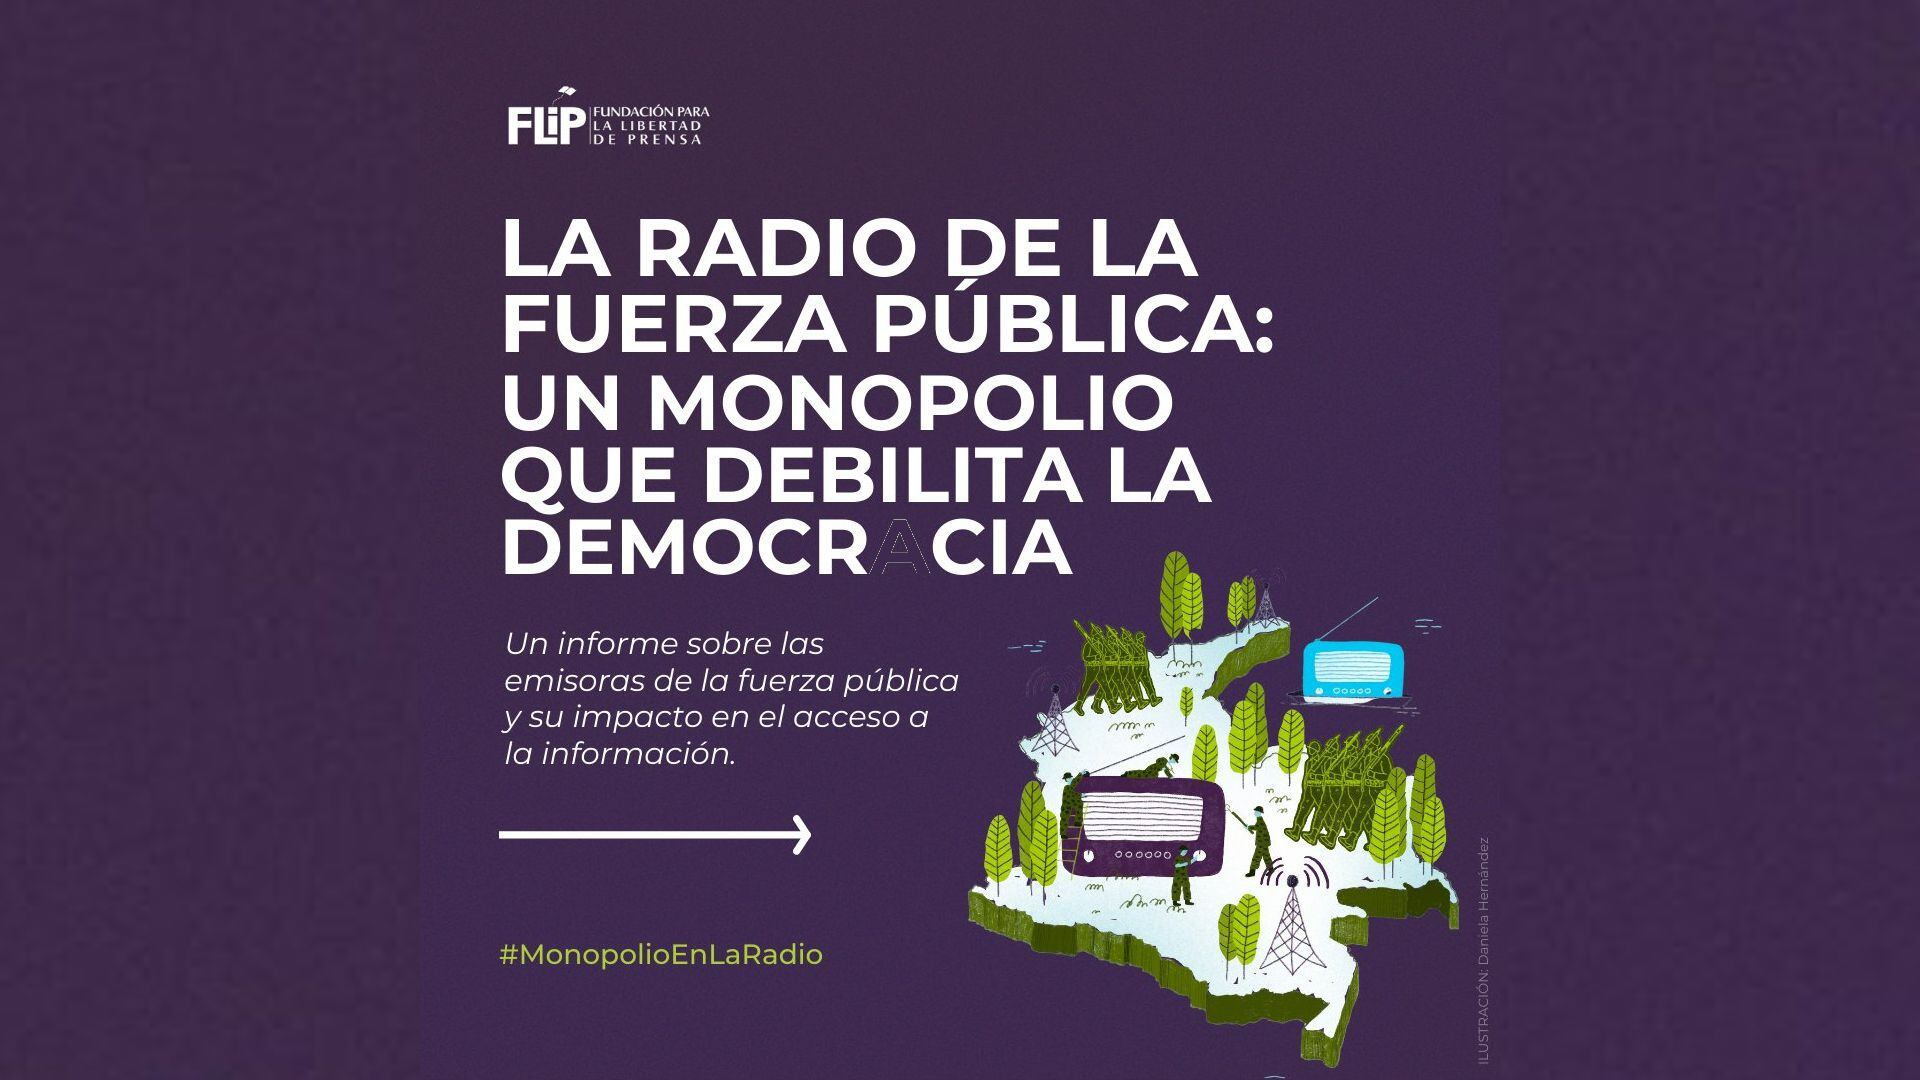 La FLIP, de cara a la transición política y al final del conflicto, Colombia debe abrir el debate sobre la pertinencia y utilidad de las emisoras de la fuerza pública. Imagen: @FLIP_org, Twitter.